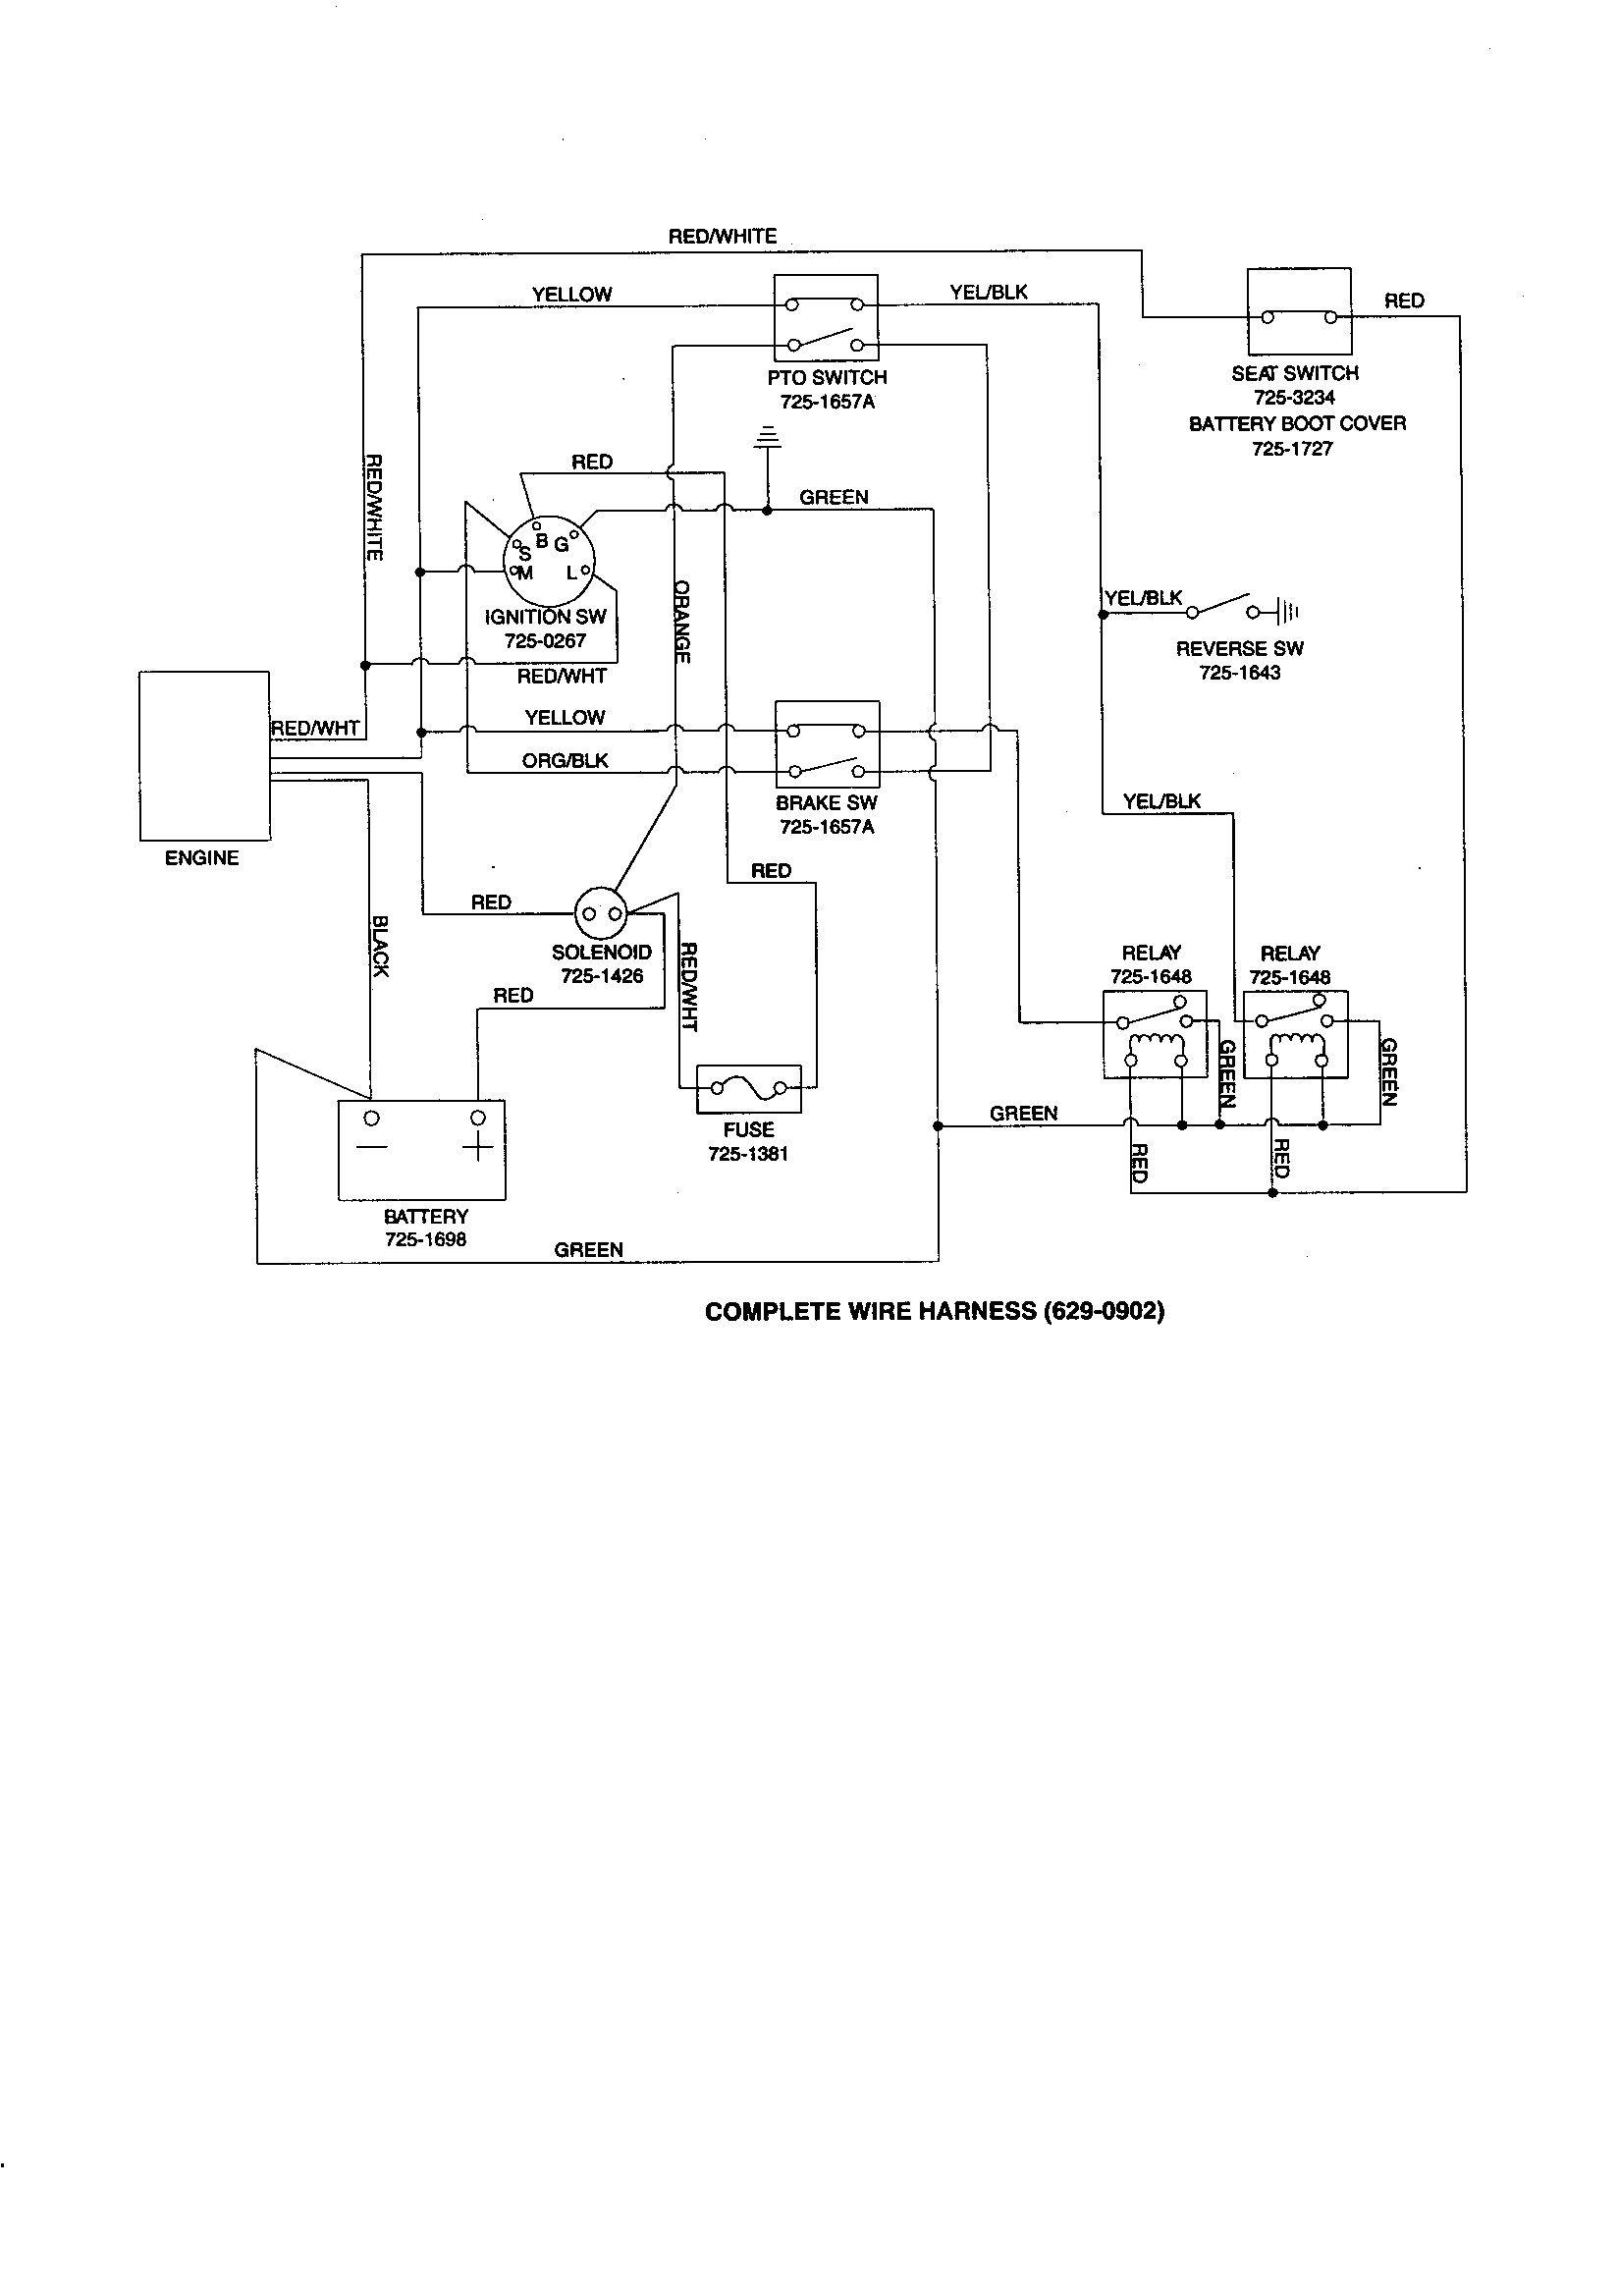 cics wiring diagram wiring librarynortel wiring chart wire center u2022 norstar cics wiring diagram